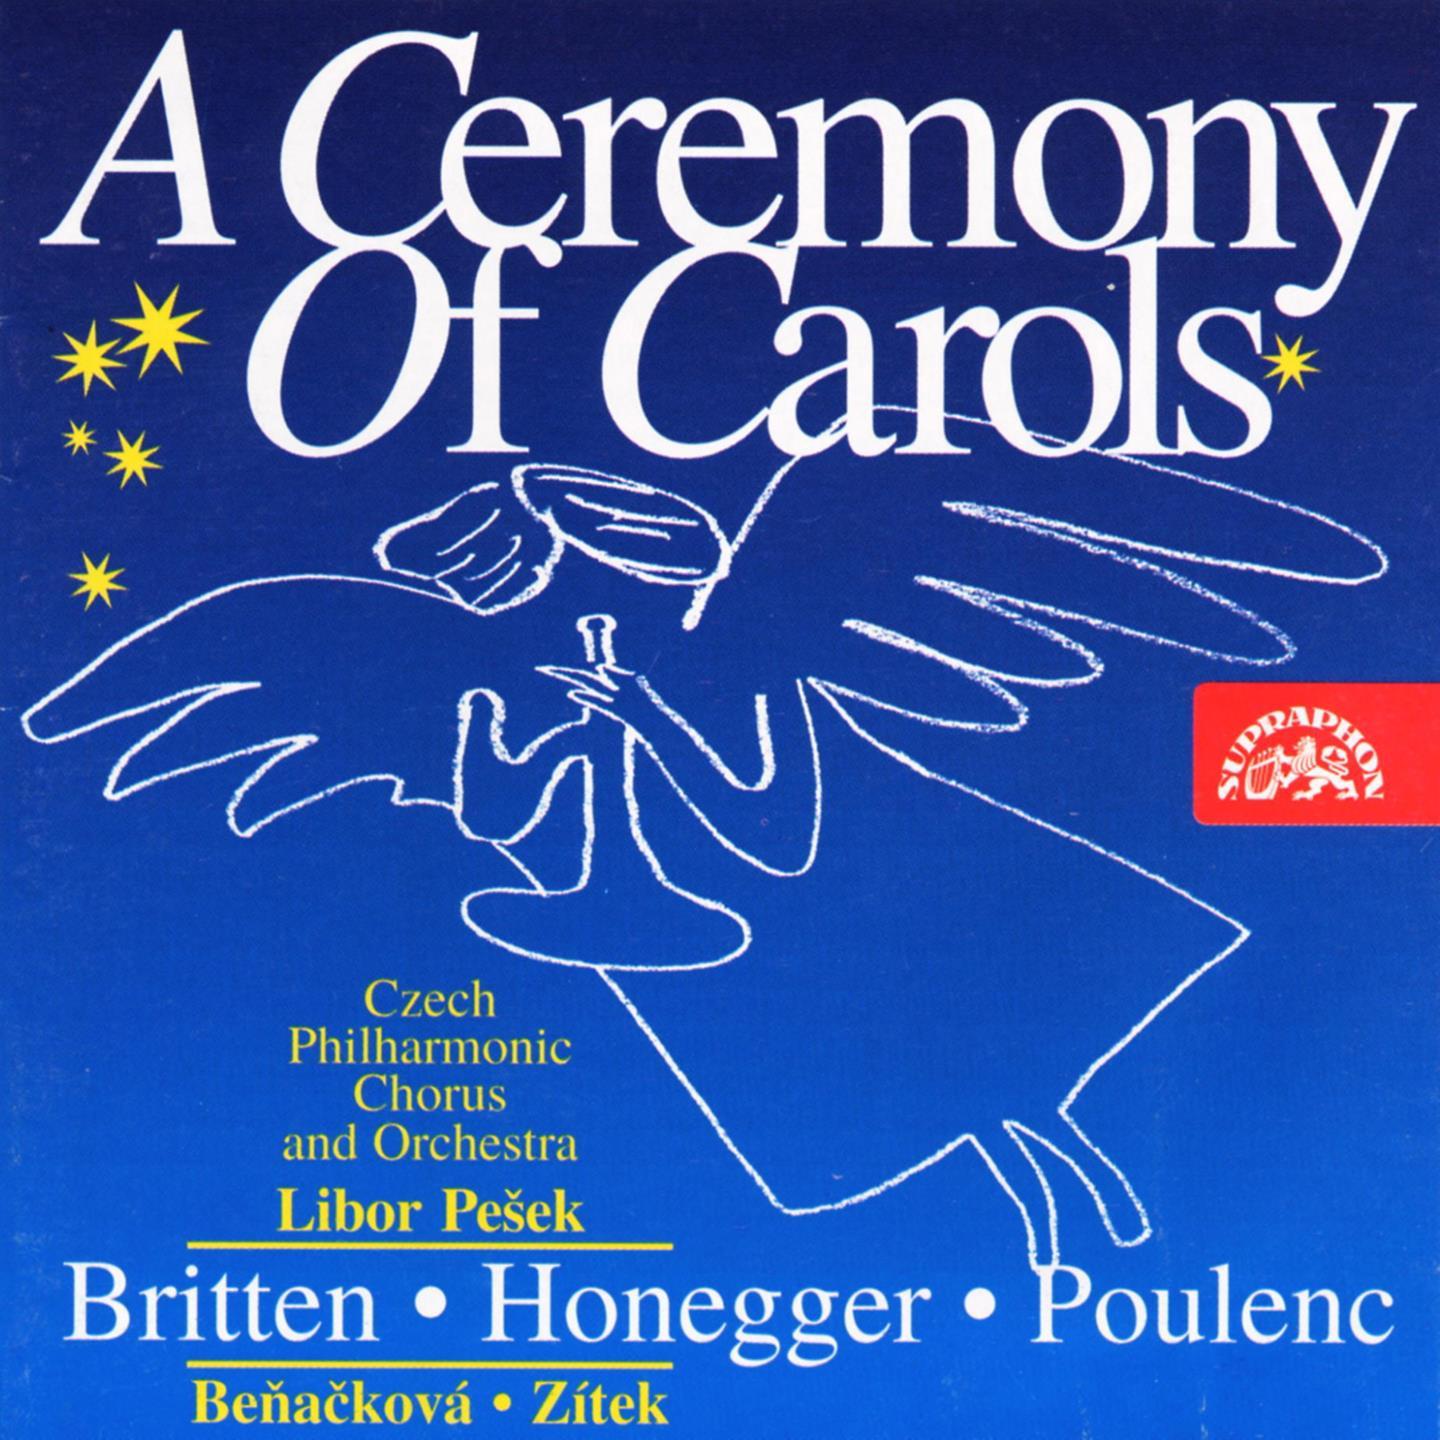 A Ceremony of Carols, Op. 28: XI. Recession